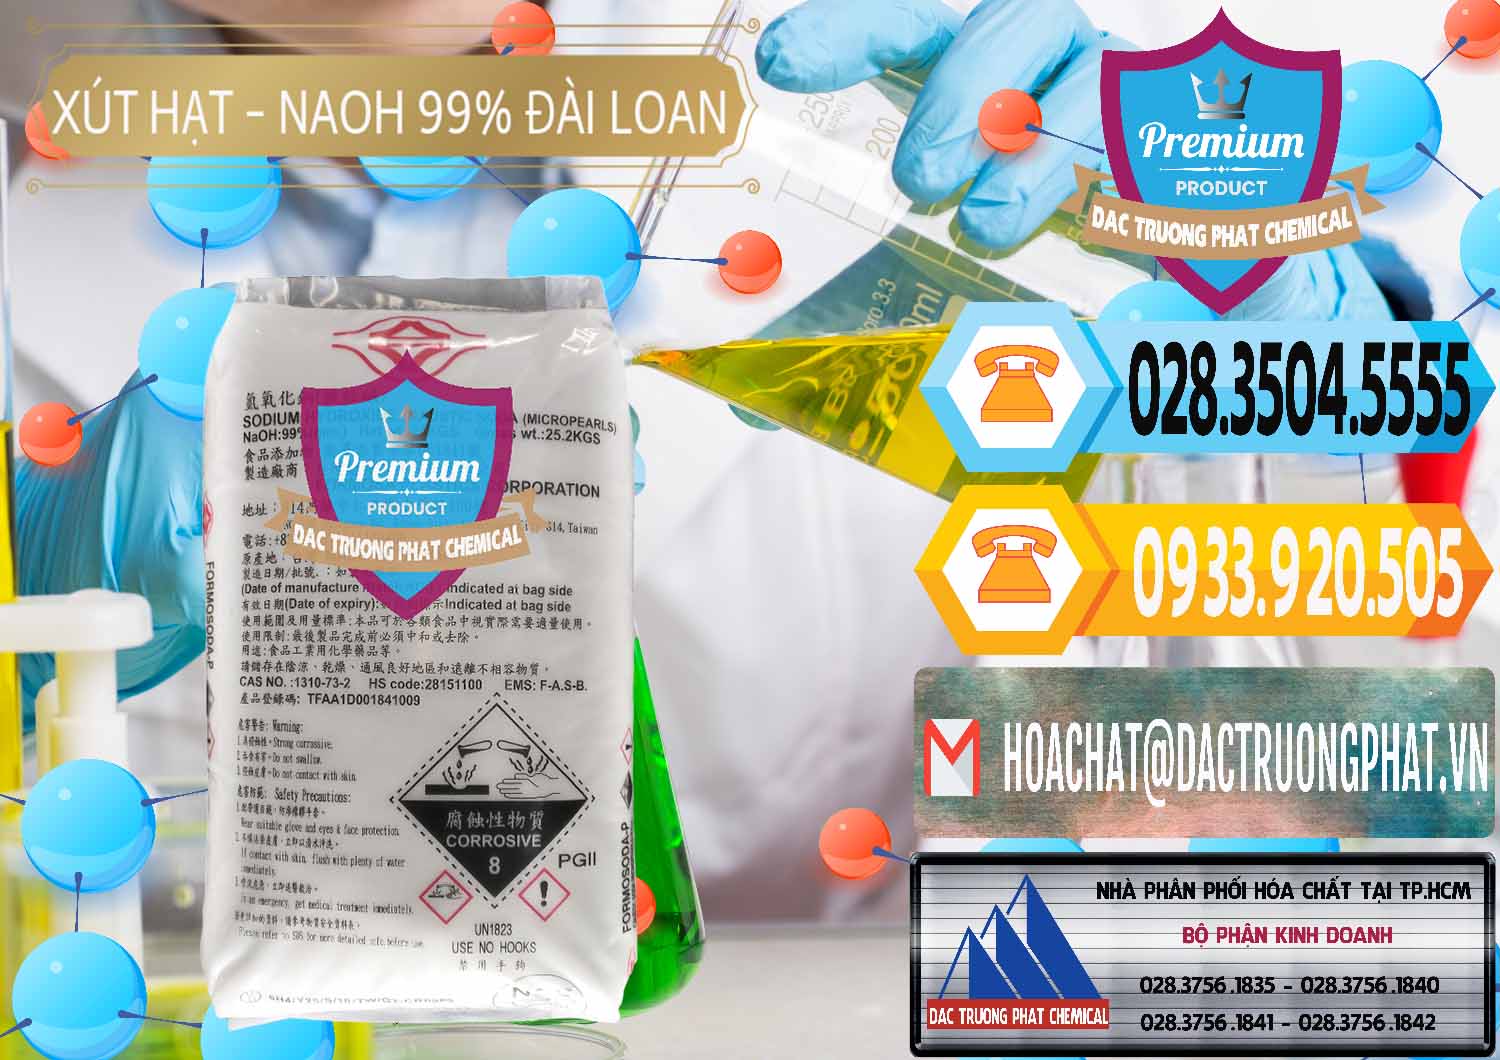 Nơi cung cấp và bán Xút Hạt - NaOH Bột 99% Đài Loan Taiwan Formosa - 0167 - Cty cung cấp _ bán hóa chất tại TP.HCM - hoachattayrua.net